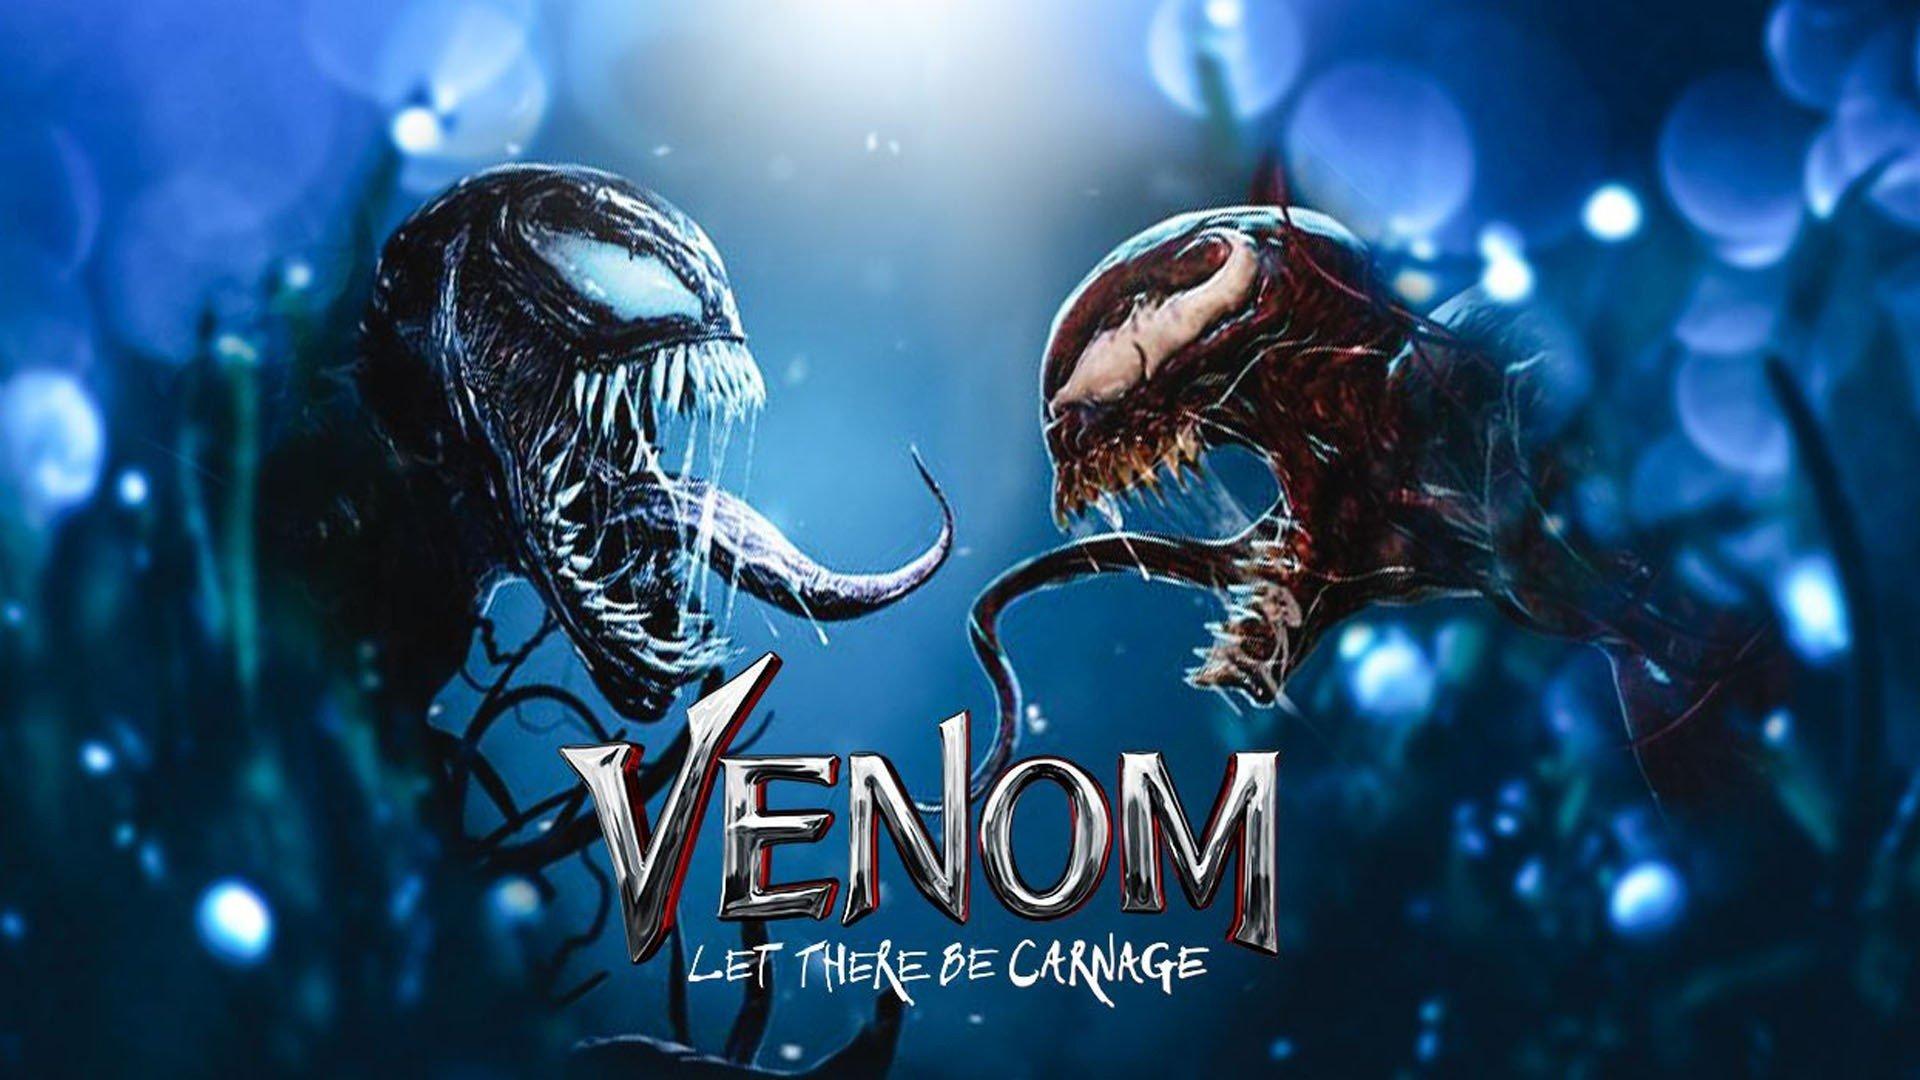 Tạo hình của Venom và Carnage trong phim rất ấn tượng.